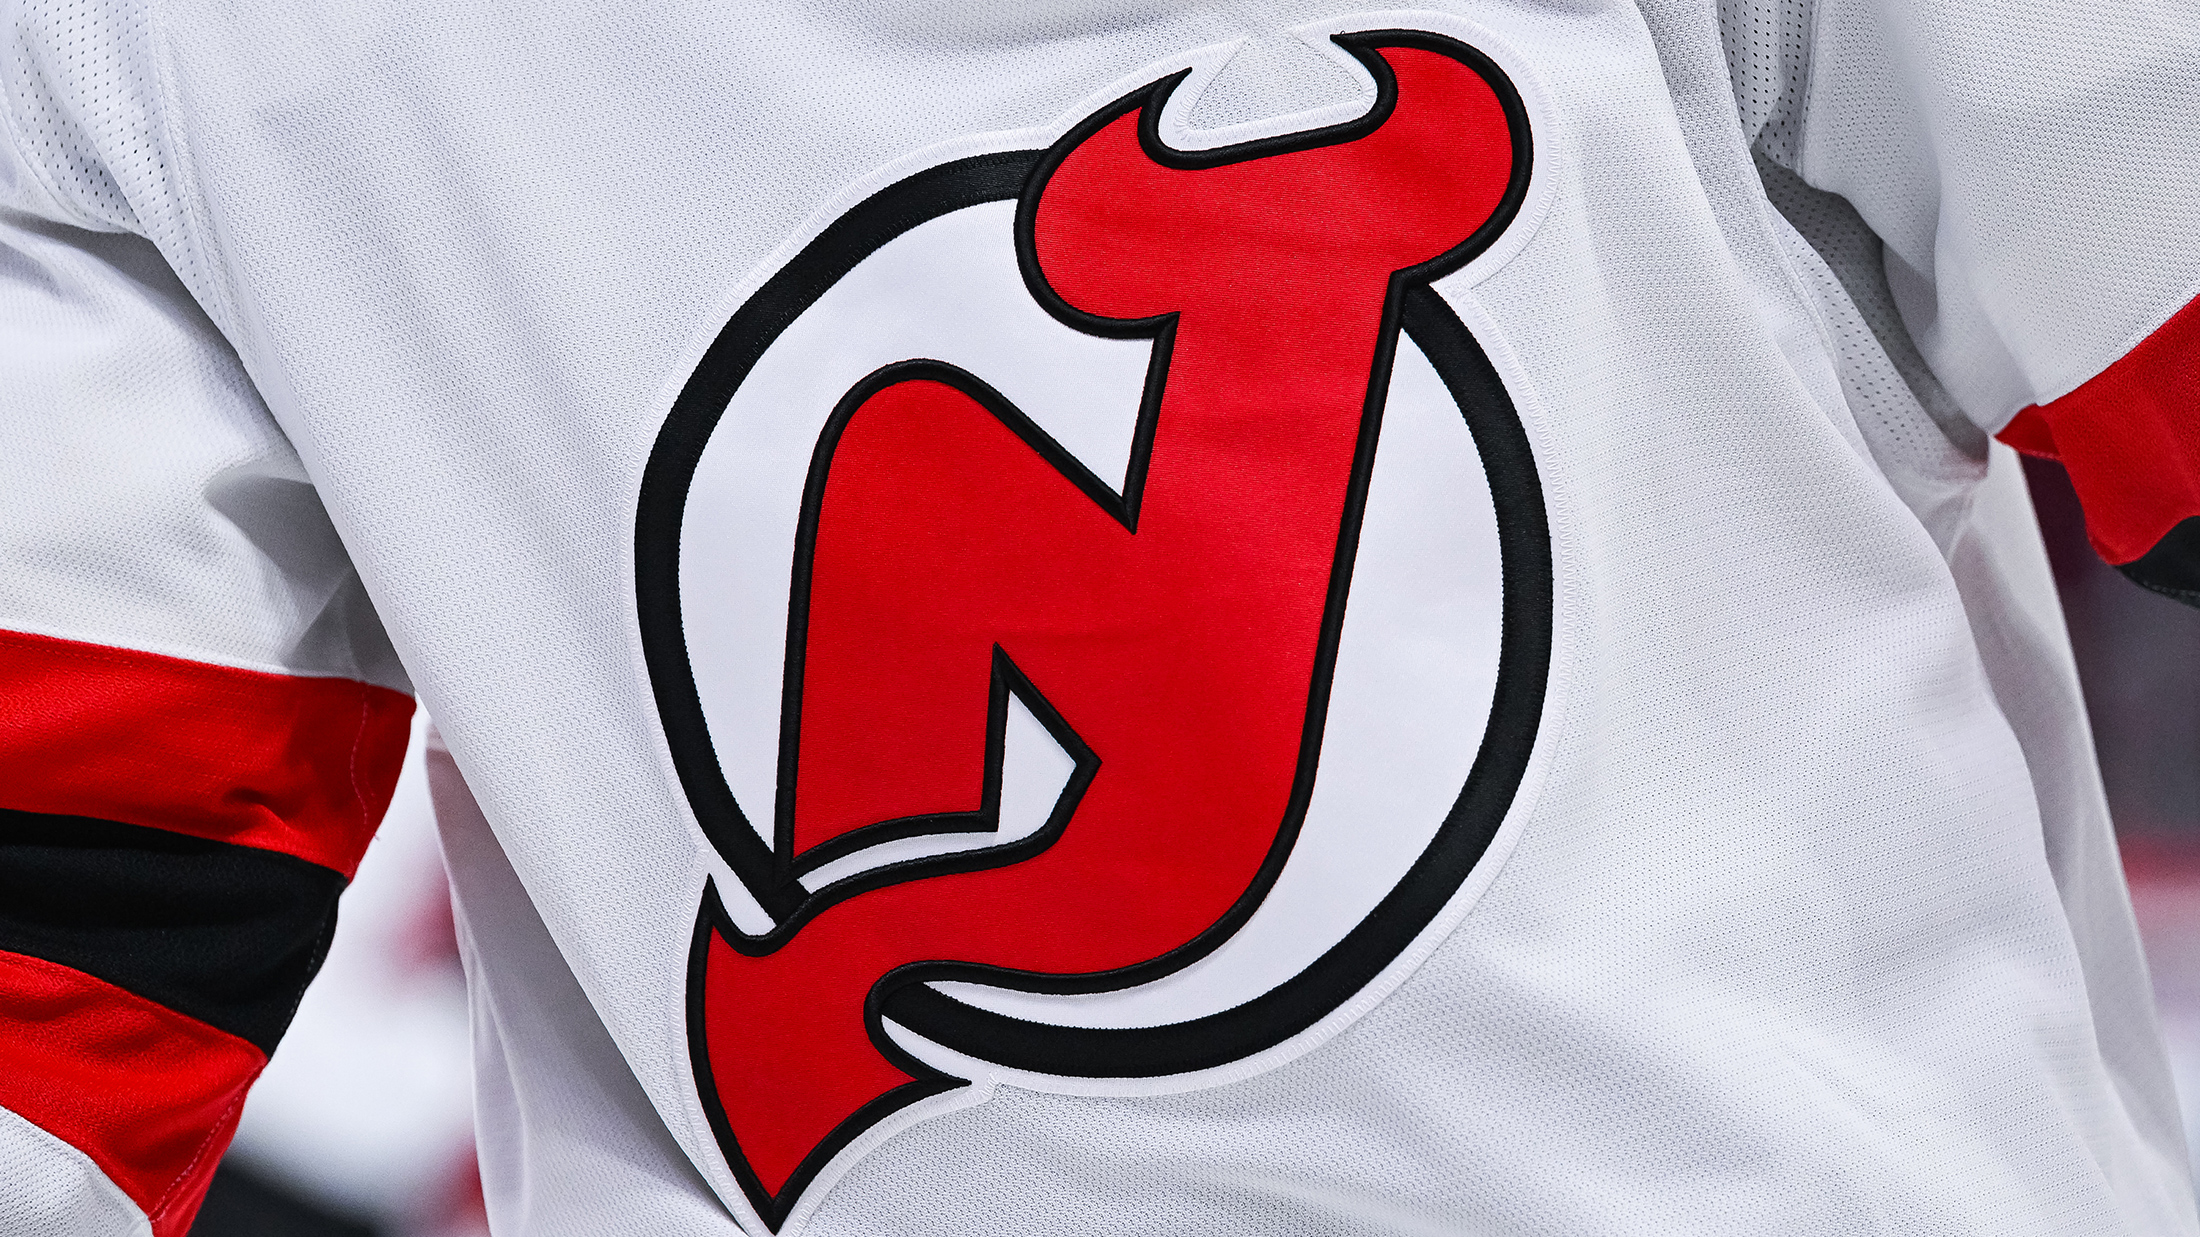 New Jersey Devils' alternate jersey leaked